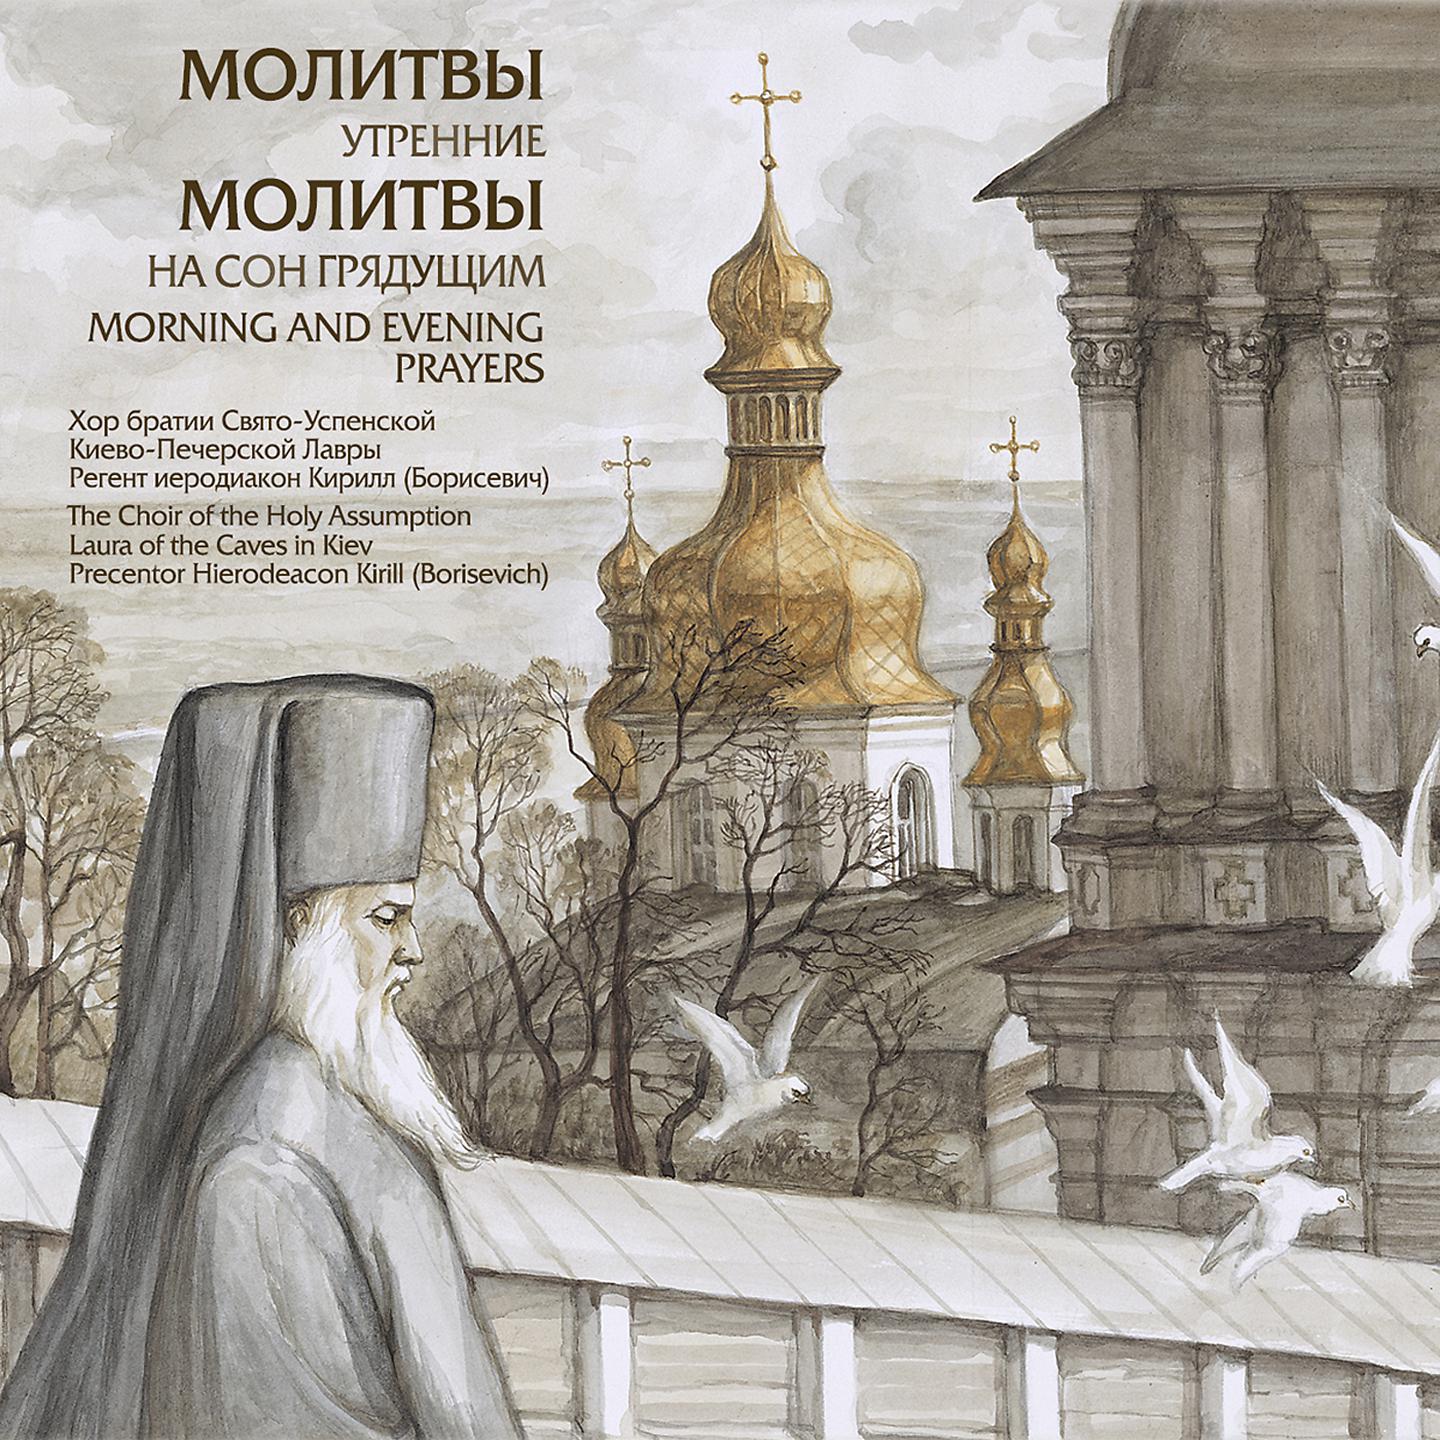 Православные утренние молитвы аудио. Утренние молитвы. Молитвы утренние и на сон грядущим. Молитва на сон грядущий.